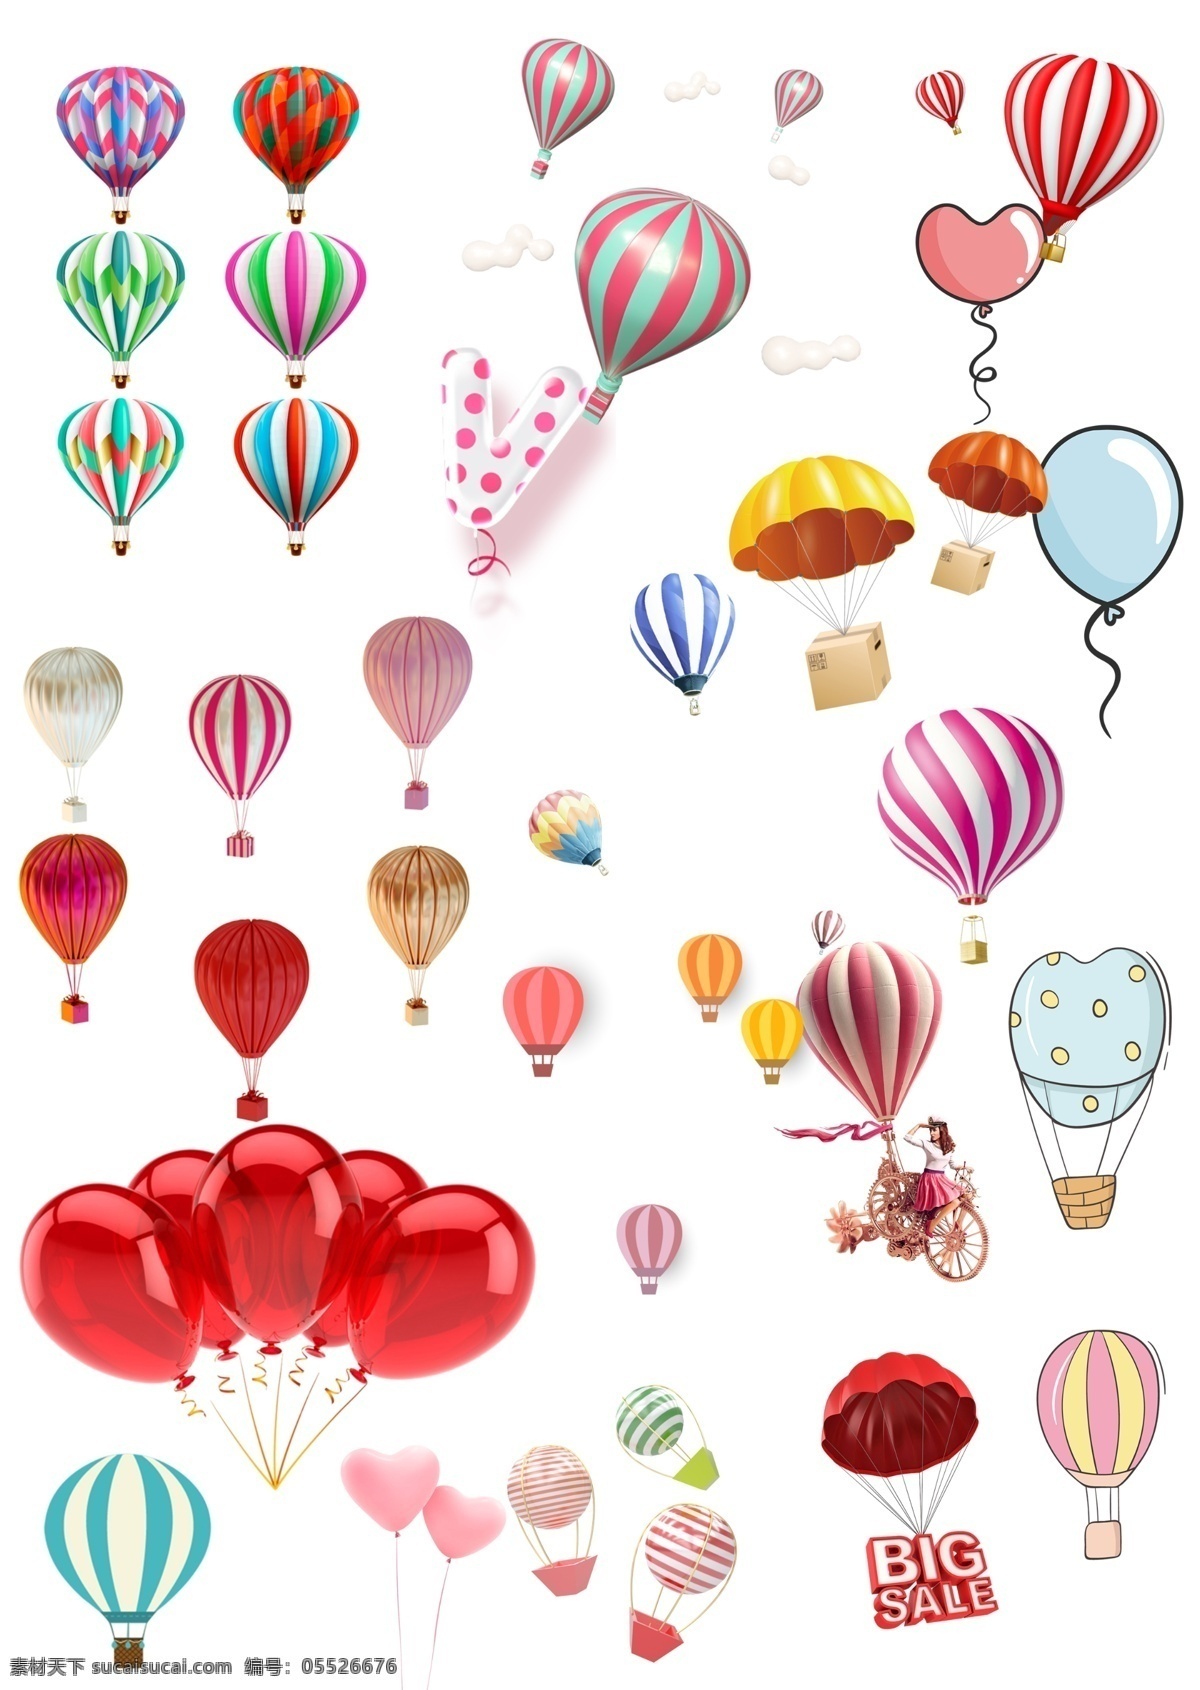 卡通 热气球 卡通热气球 png素材 气球素材 气球 c4d热气球 c4d气球 立体气球 气球元素 热气球png 电商漂浮物 气球氛围 气球热气球 素材集合 红色气球 粉丝气球 love气球